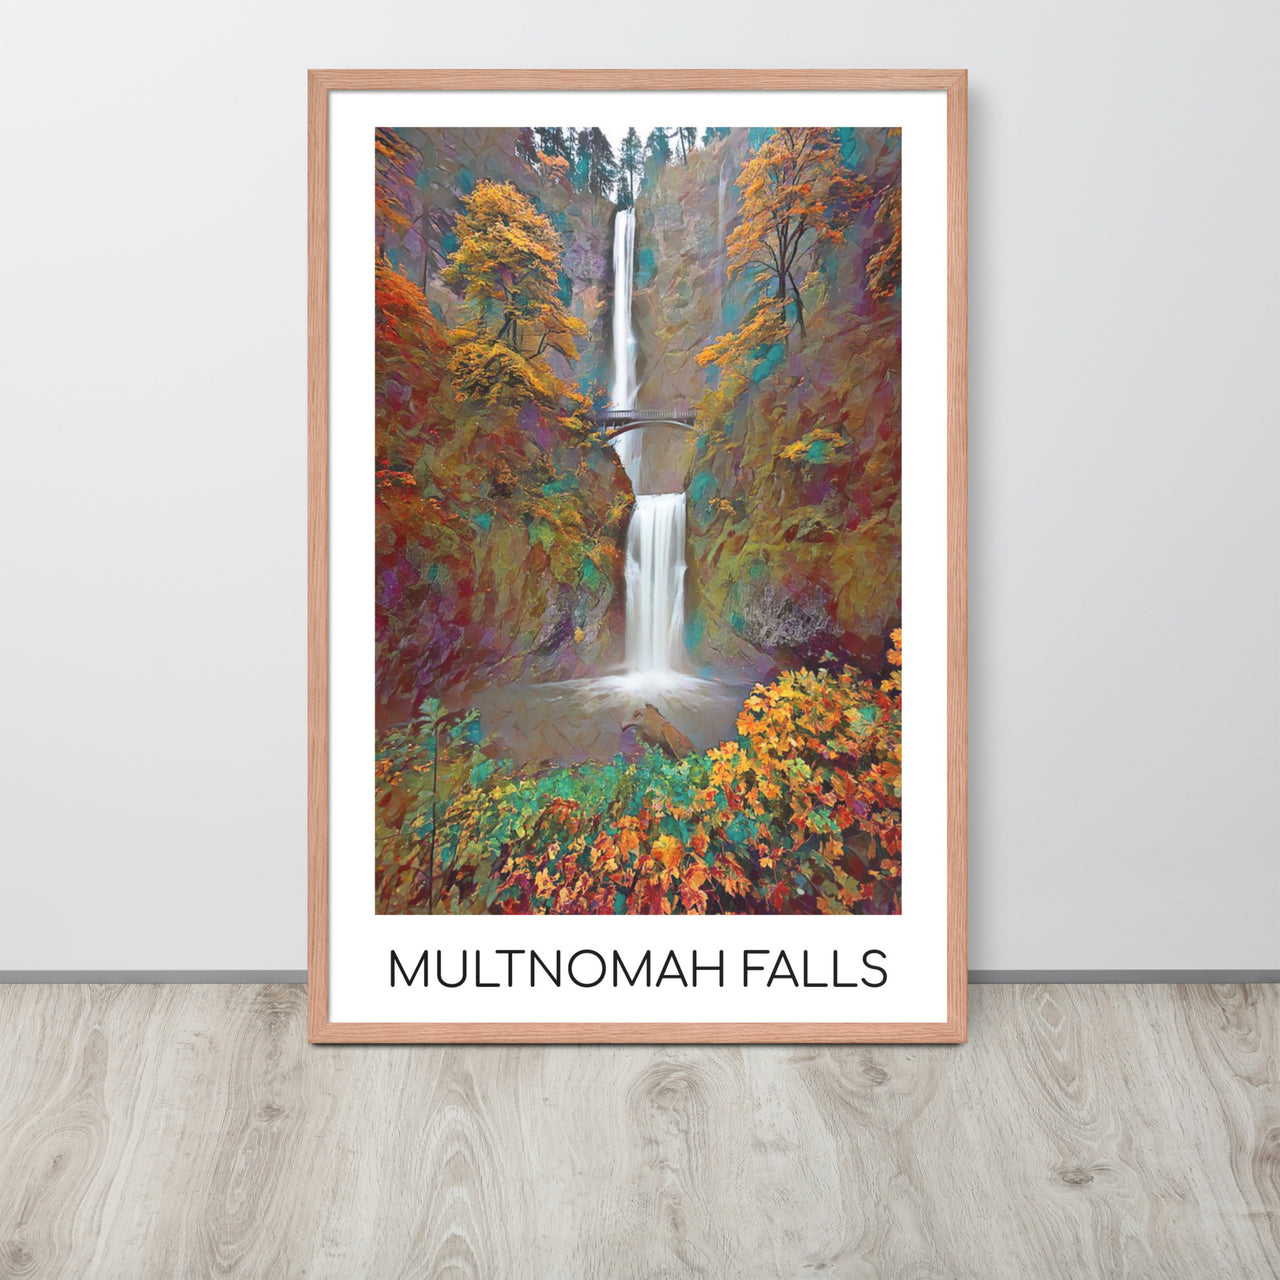 Multnomah Falls - Framed poster